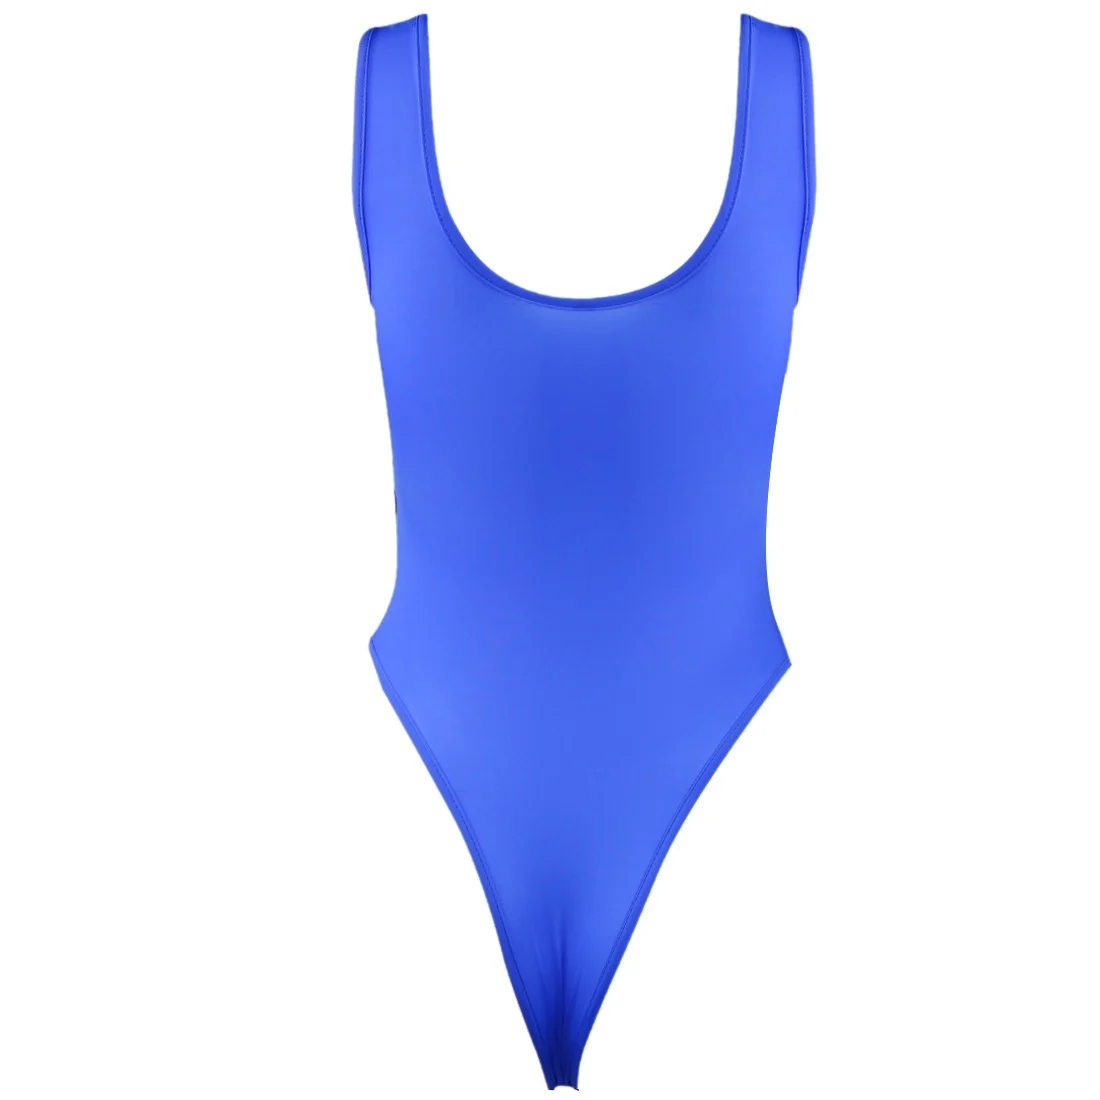 TiaoBug цельные гладкие эластичные стринги с высокой посадкой, купальные костюмы для взрослых, Женский сексуальный купальник, нижнее белье